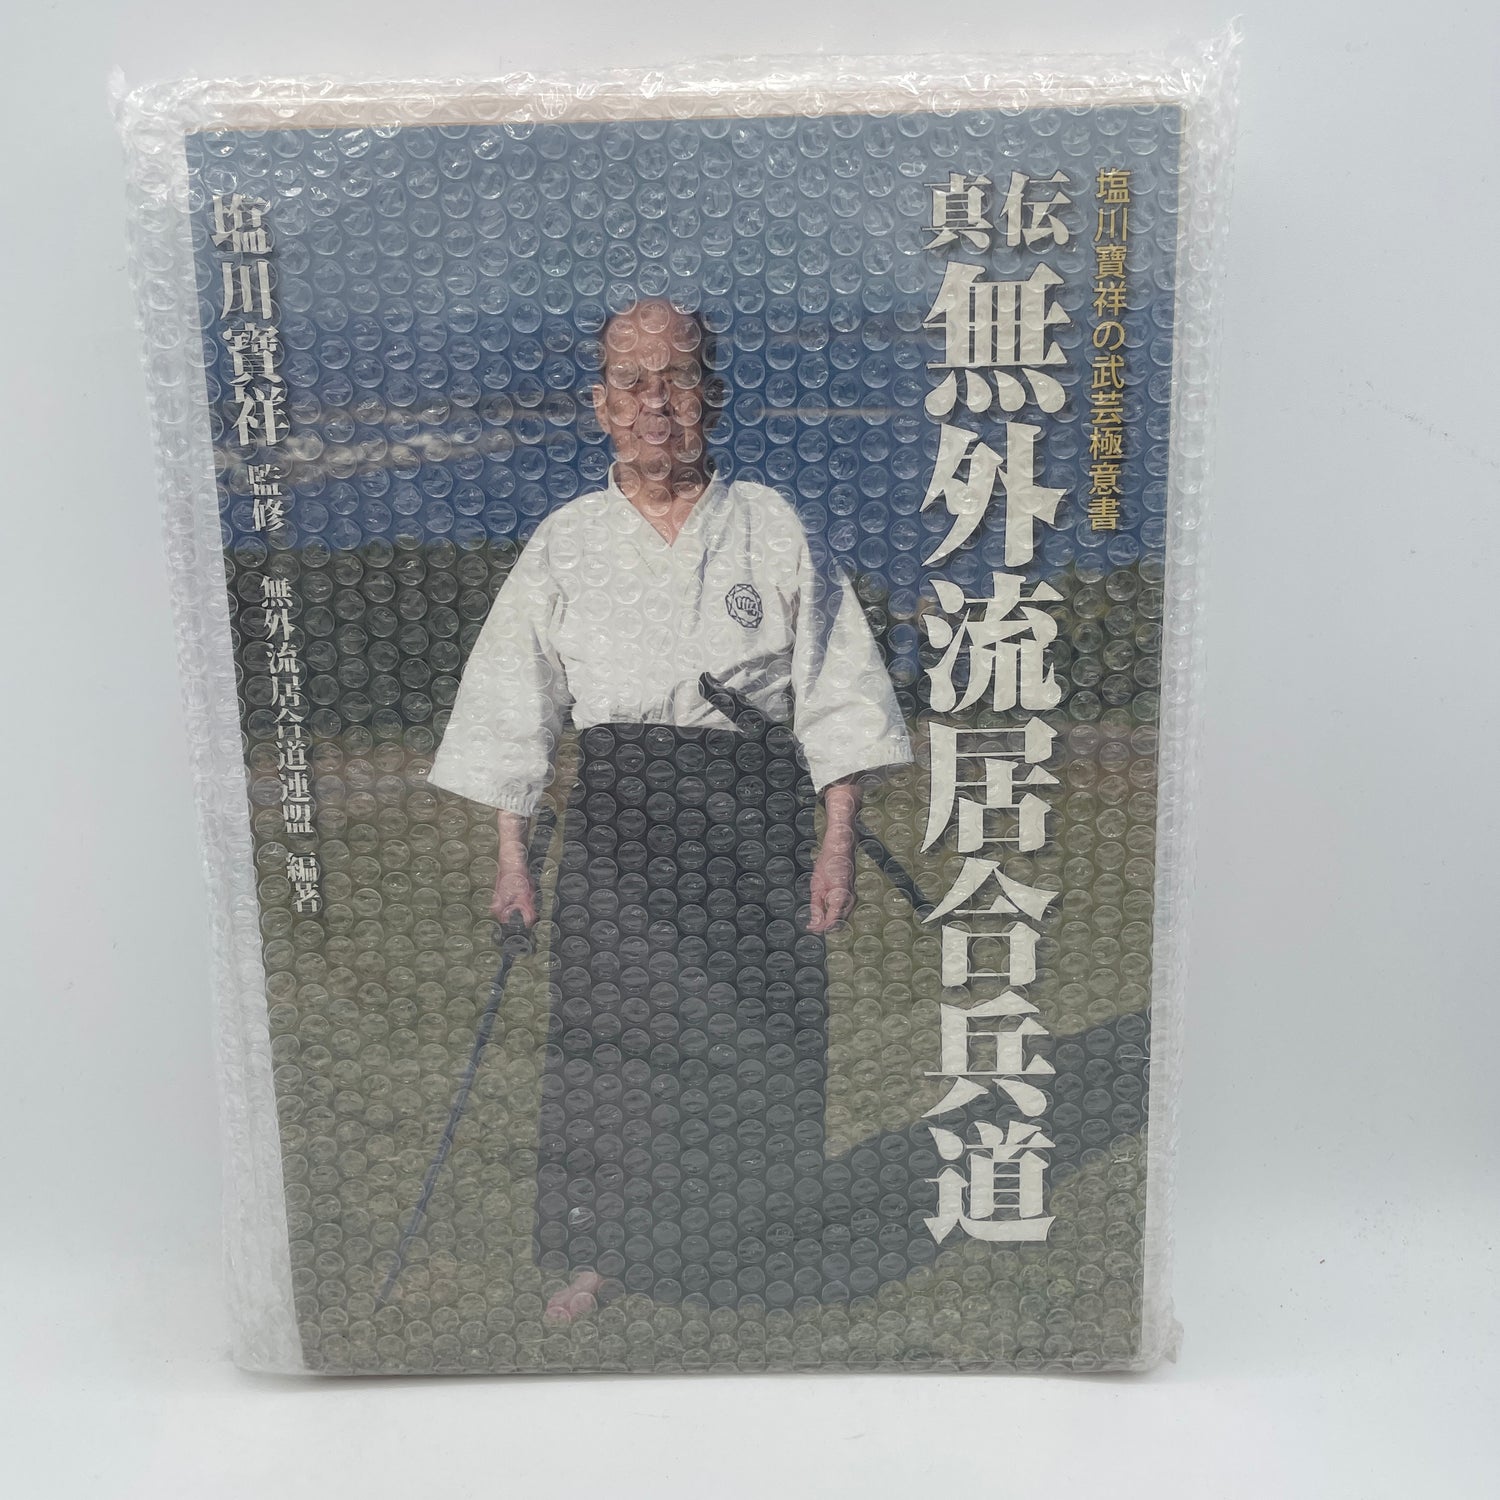 Mugai Ryu Iaihyodo Kyohan (Tapa dura) Libro de Hosho Shiokawa (Usado)